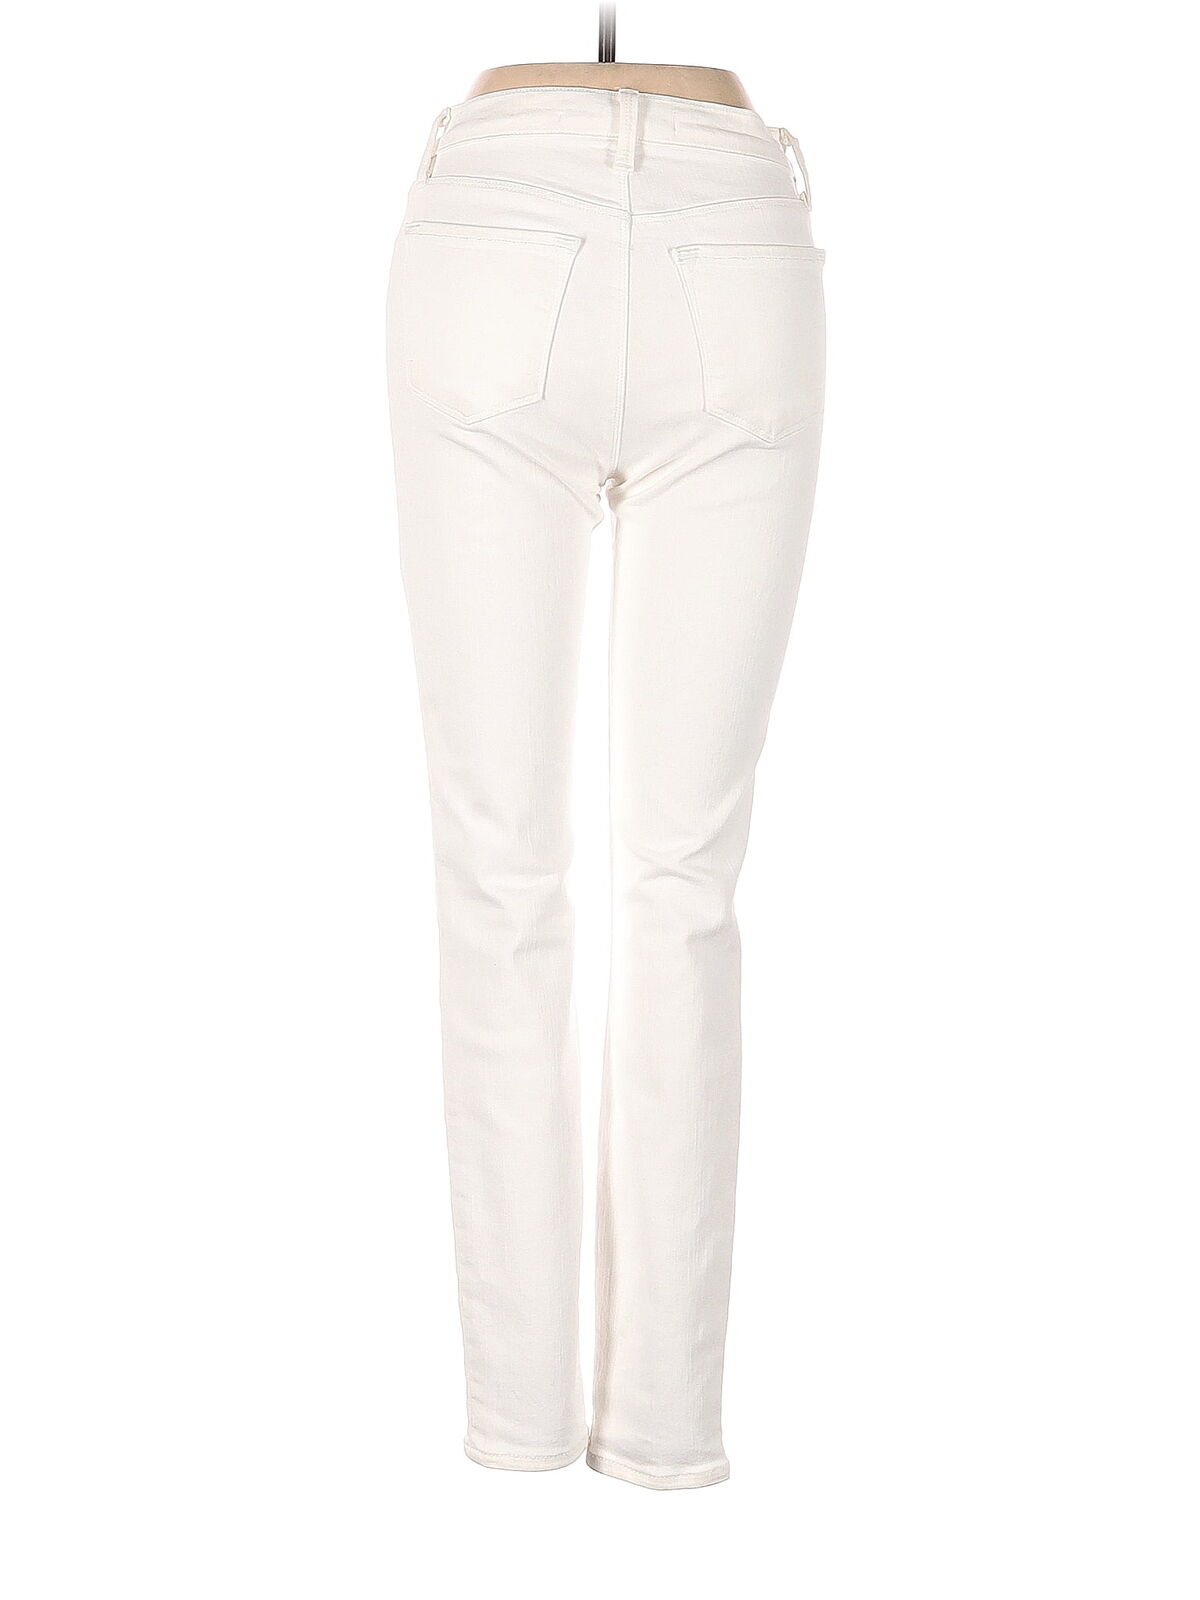 J Brand Women White Jeans 24W - image 2